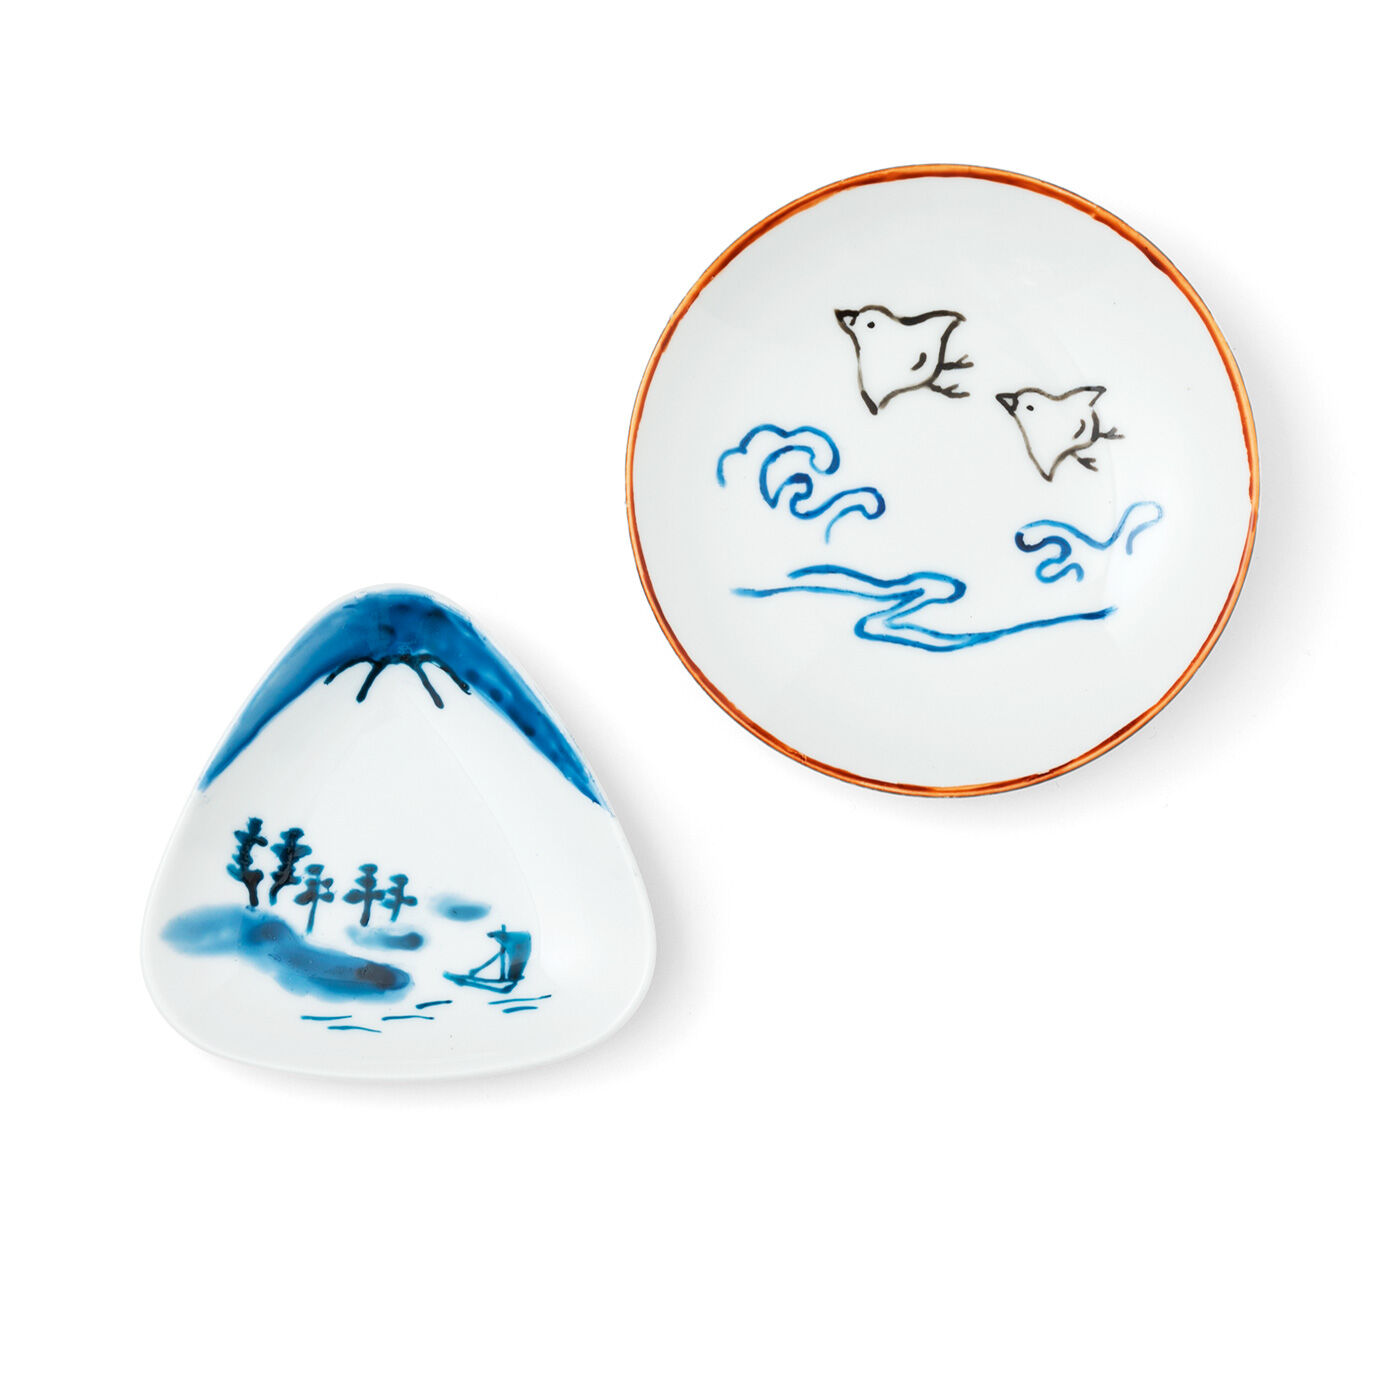 クチュリエ|おうちで絵付け体験 骨董風な絵柄を楽しむ 豆皿・小皿の会|富士山と千鳥